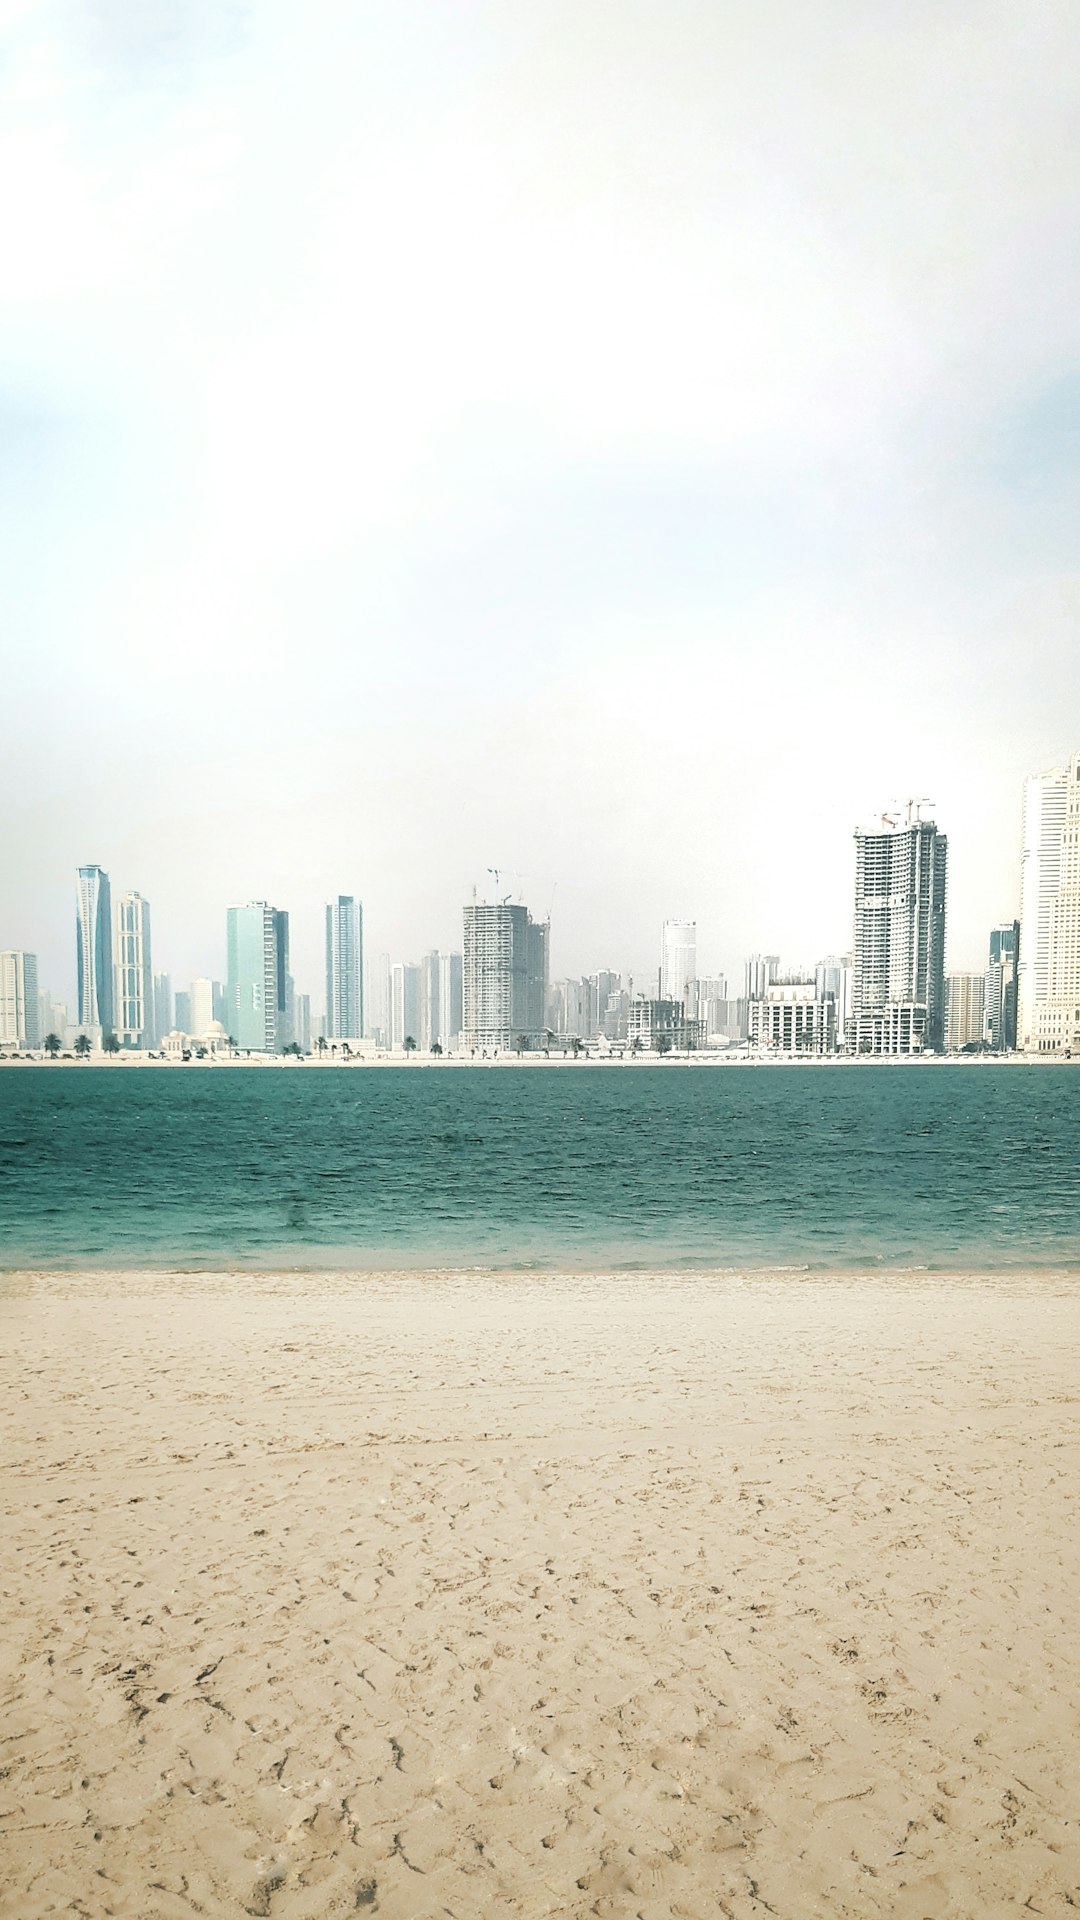 Beach photo spot Mamzar Beach - Dubai - United Arab Emirates Palm Jumeirah